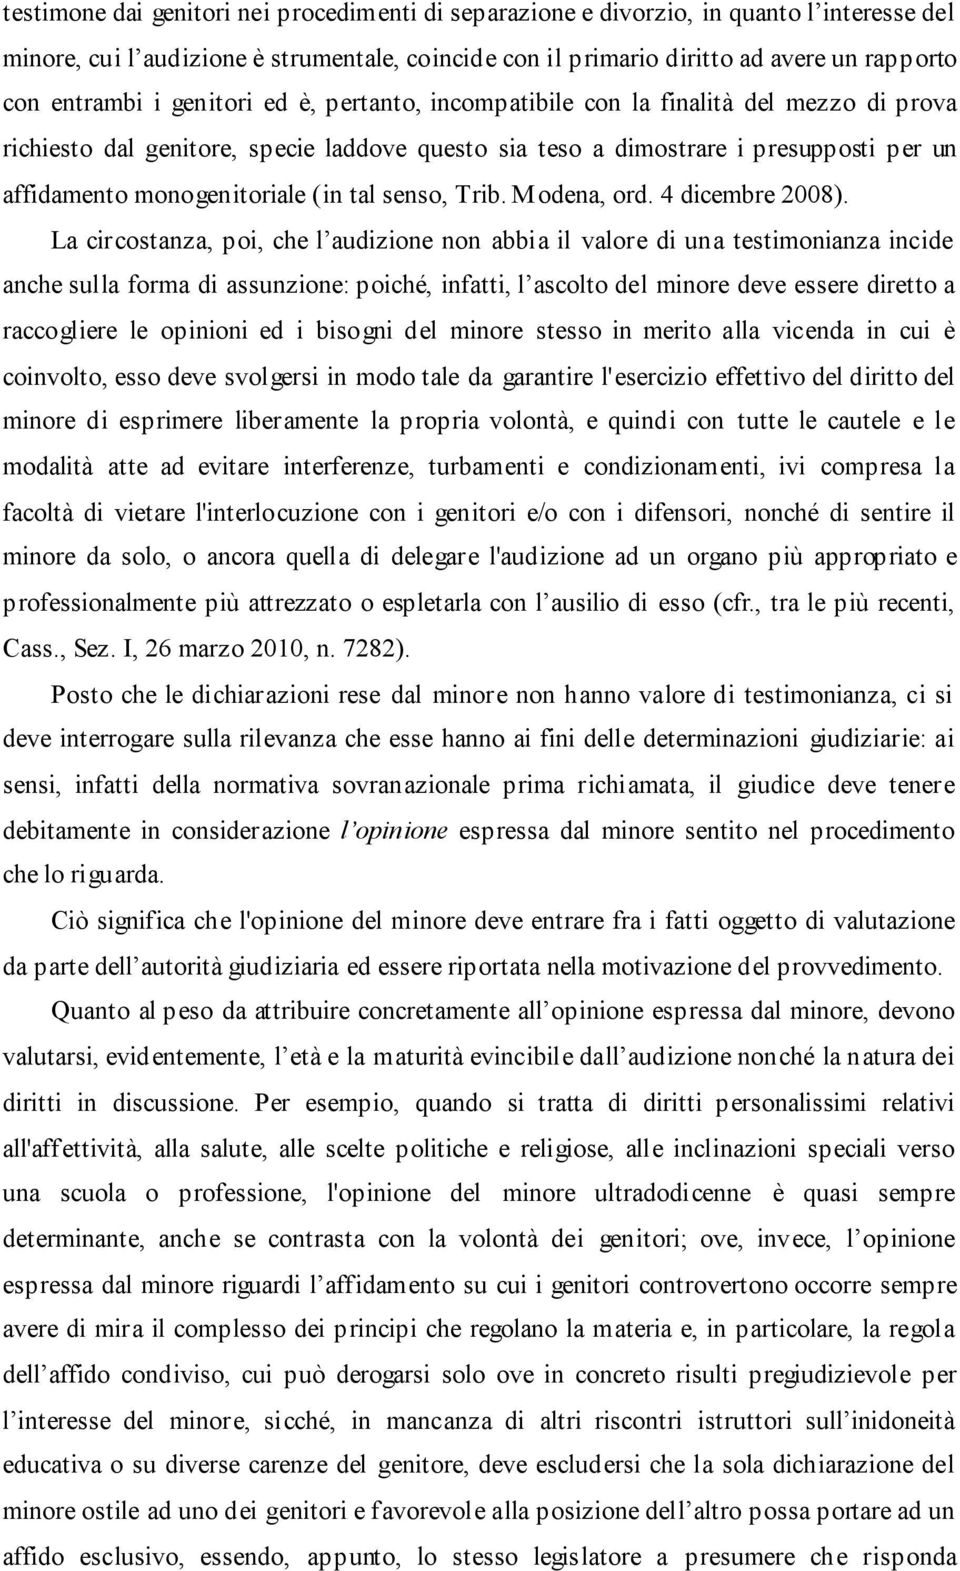 tal senso, Trib. Modena, ord. 4 dicembre 2008).